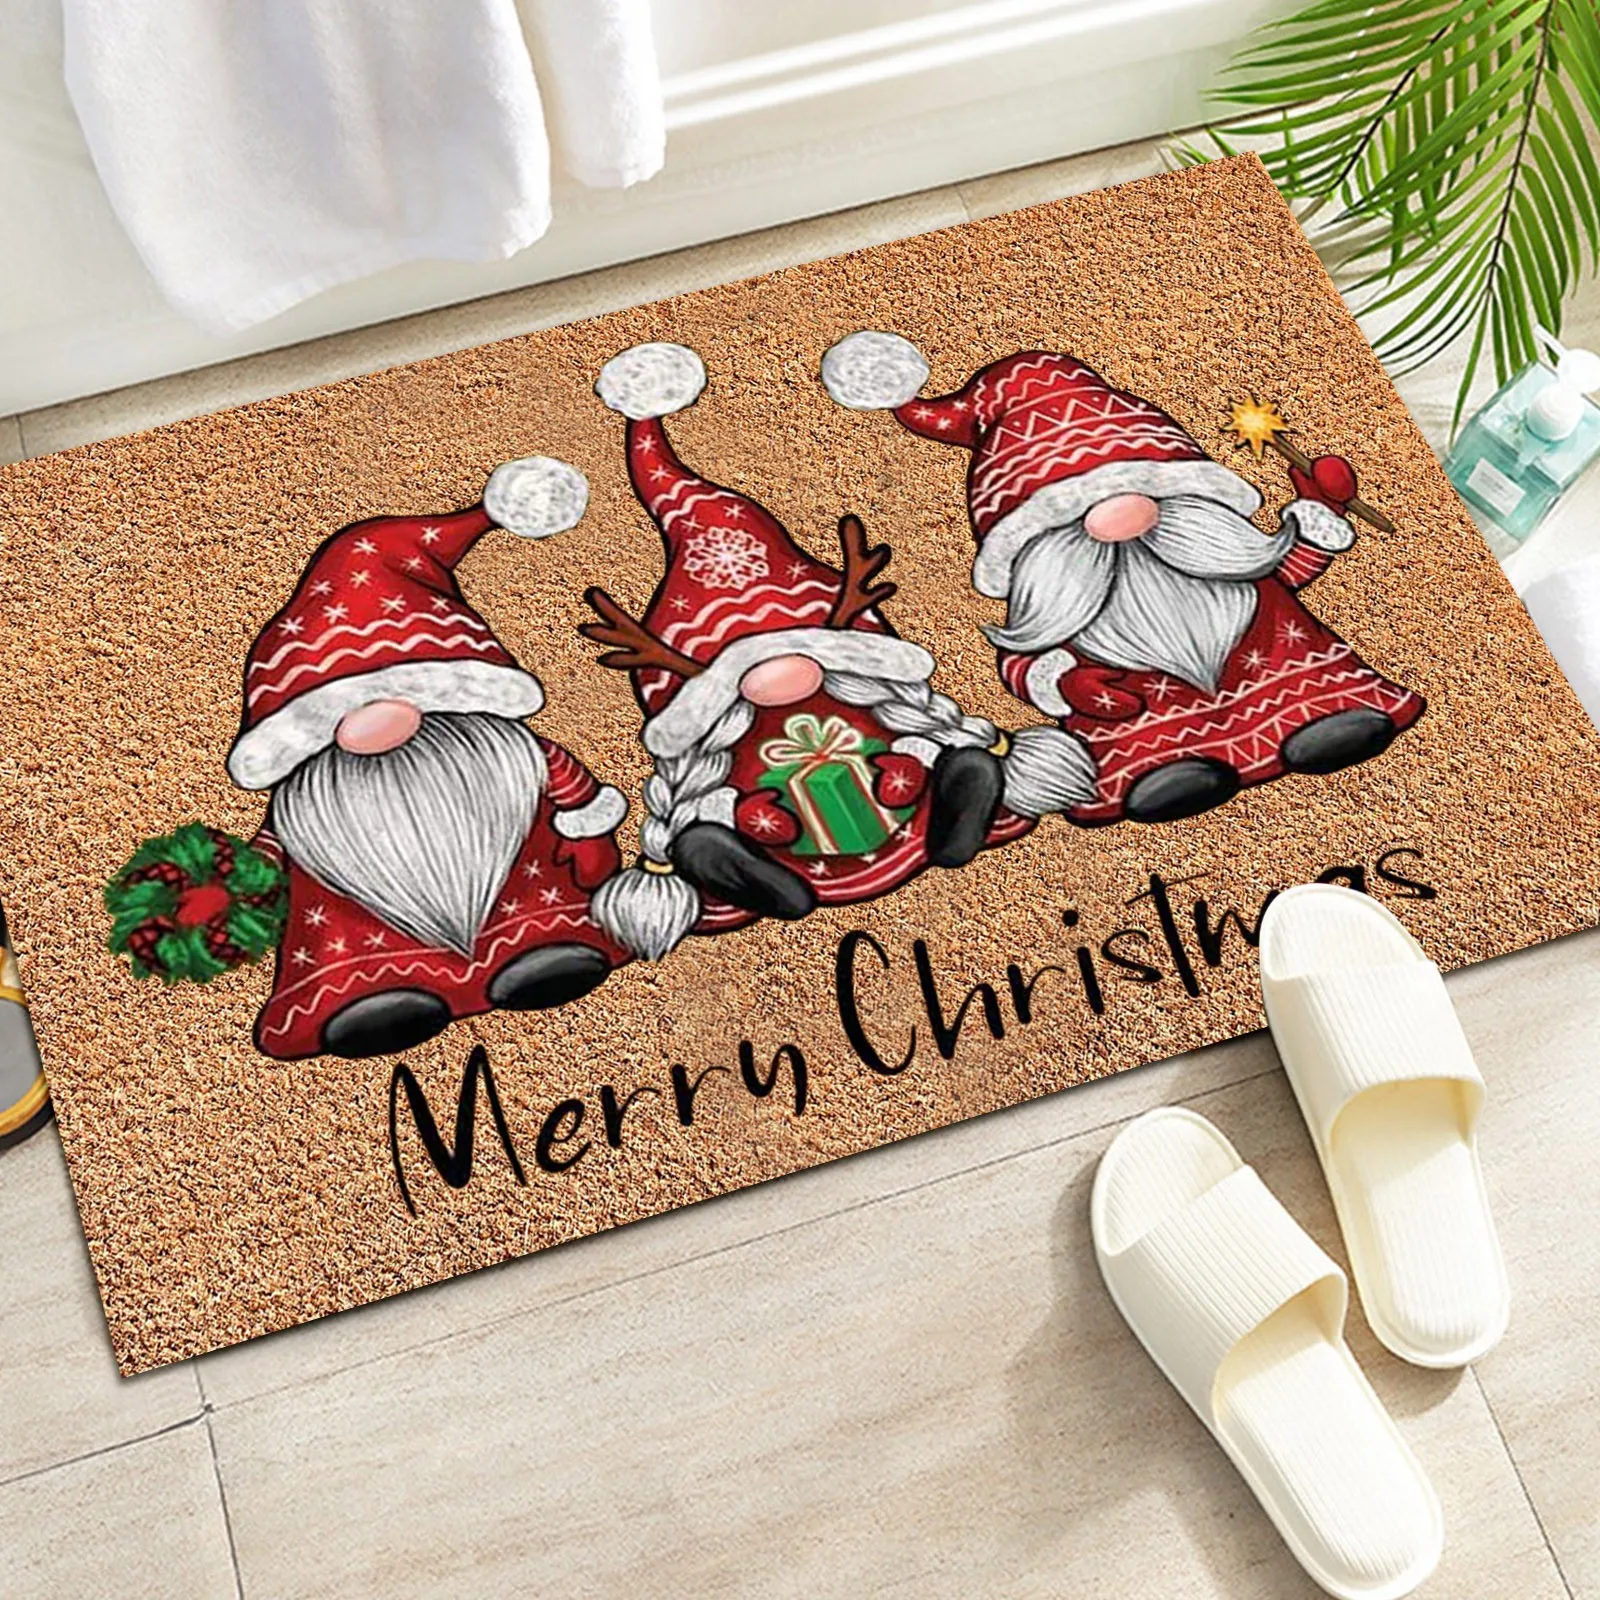 https://ae01.alicdn.com/kf/H4ef7b0c8765045d3804862b1f6353dedK/Gnome-Dwarf-Christmas-Doormat-Doormat-Welcome-Sign-Carpet-Front-Porch-Rug-Santa-Claus-Door-Mat-Xmas.jpg